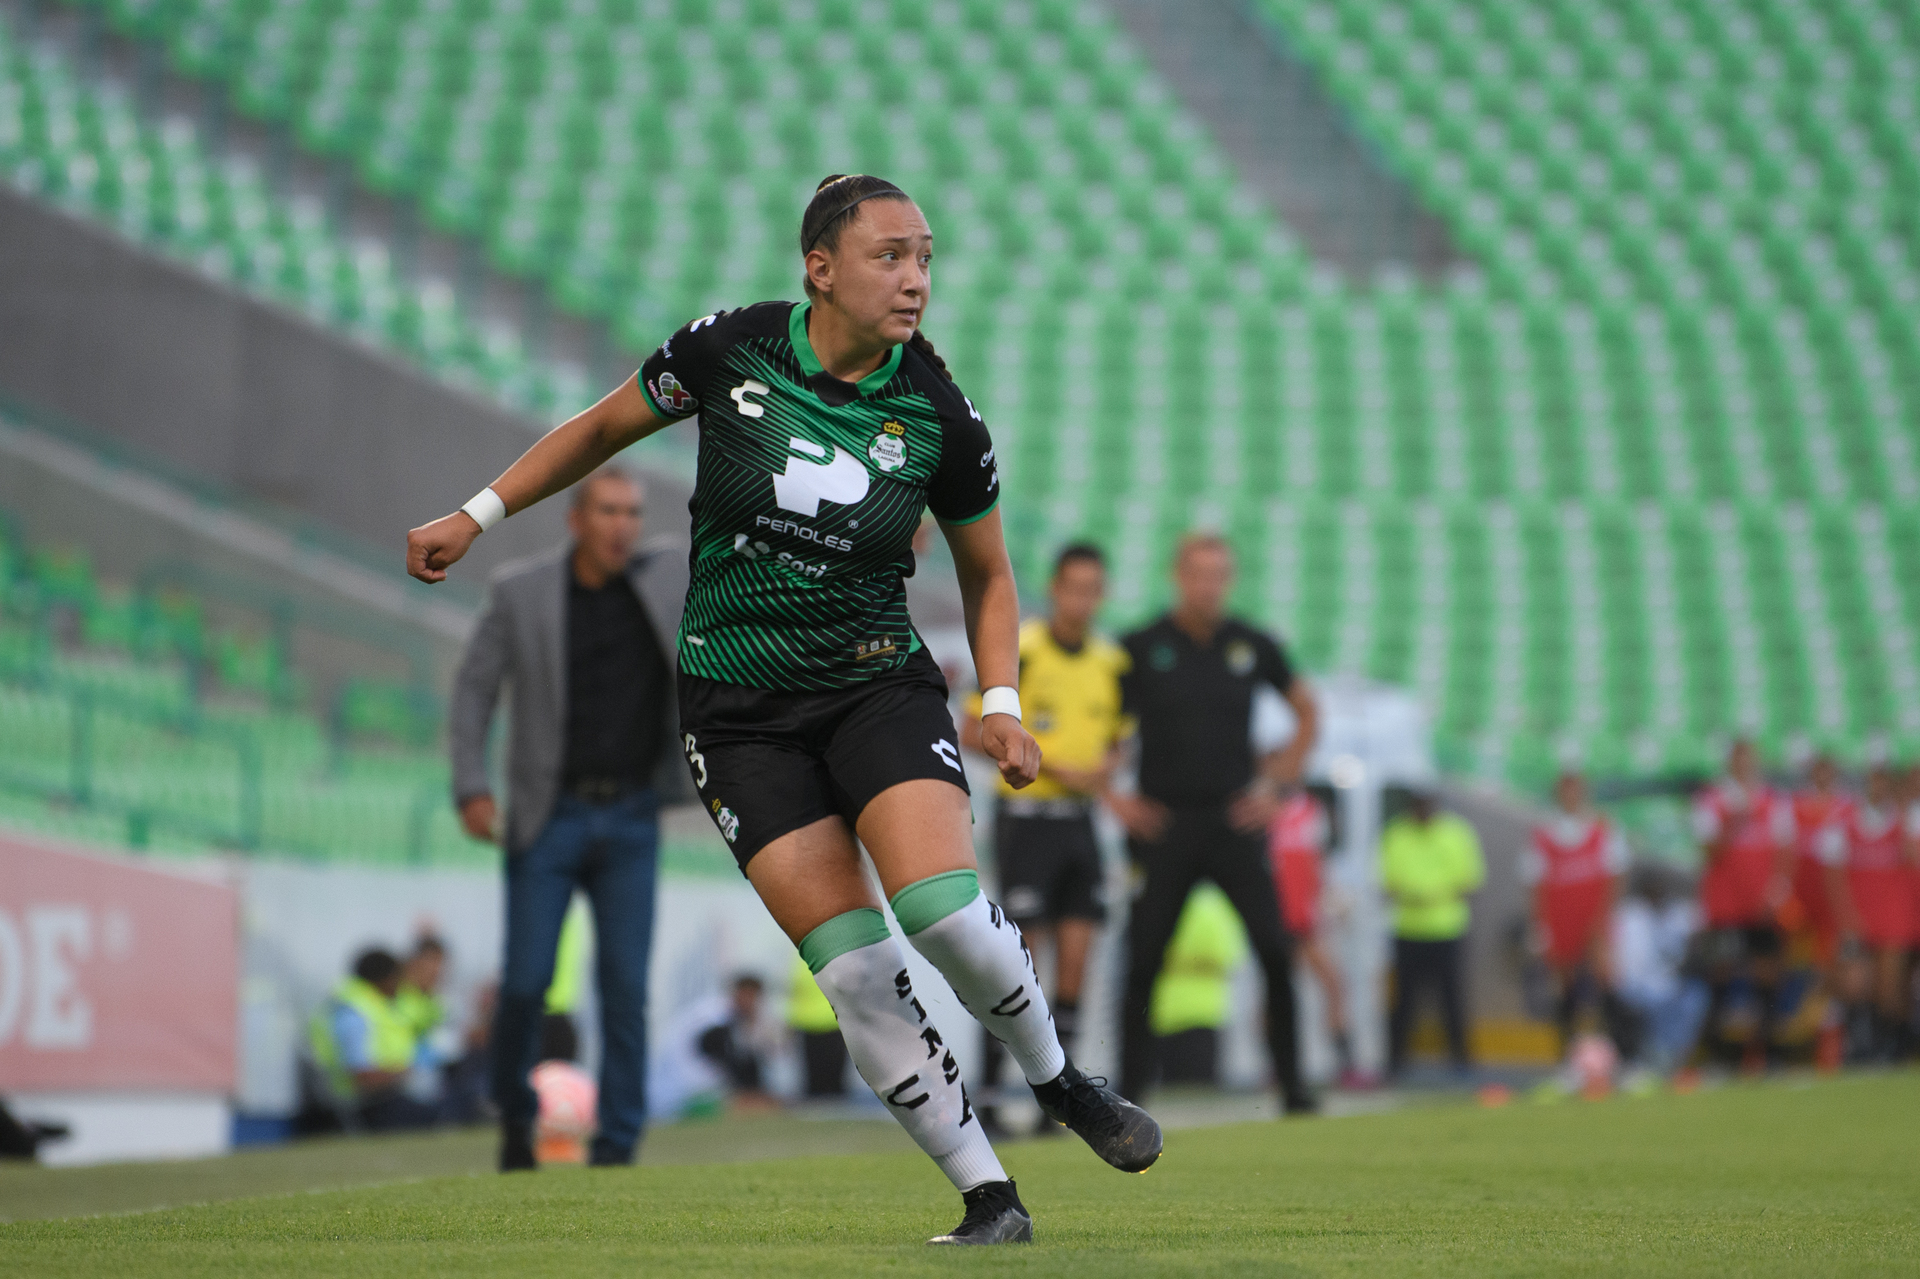 La defensora Natalia Miramontes ya debutó con las albiverdes en el Apertura 2022, por lo que se busca que sea un auténtico refuerzo en el resto de la campaña, para darle mayor solidez defensiva (JORGE MARTÍNEZ)
